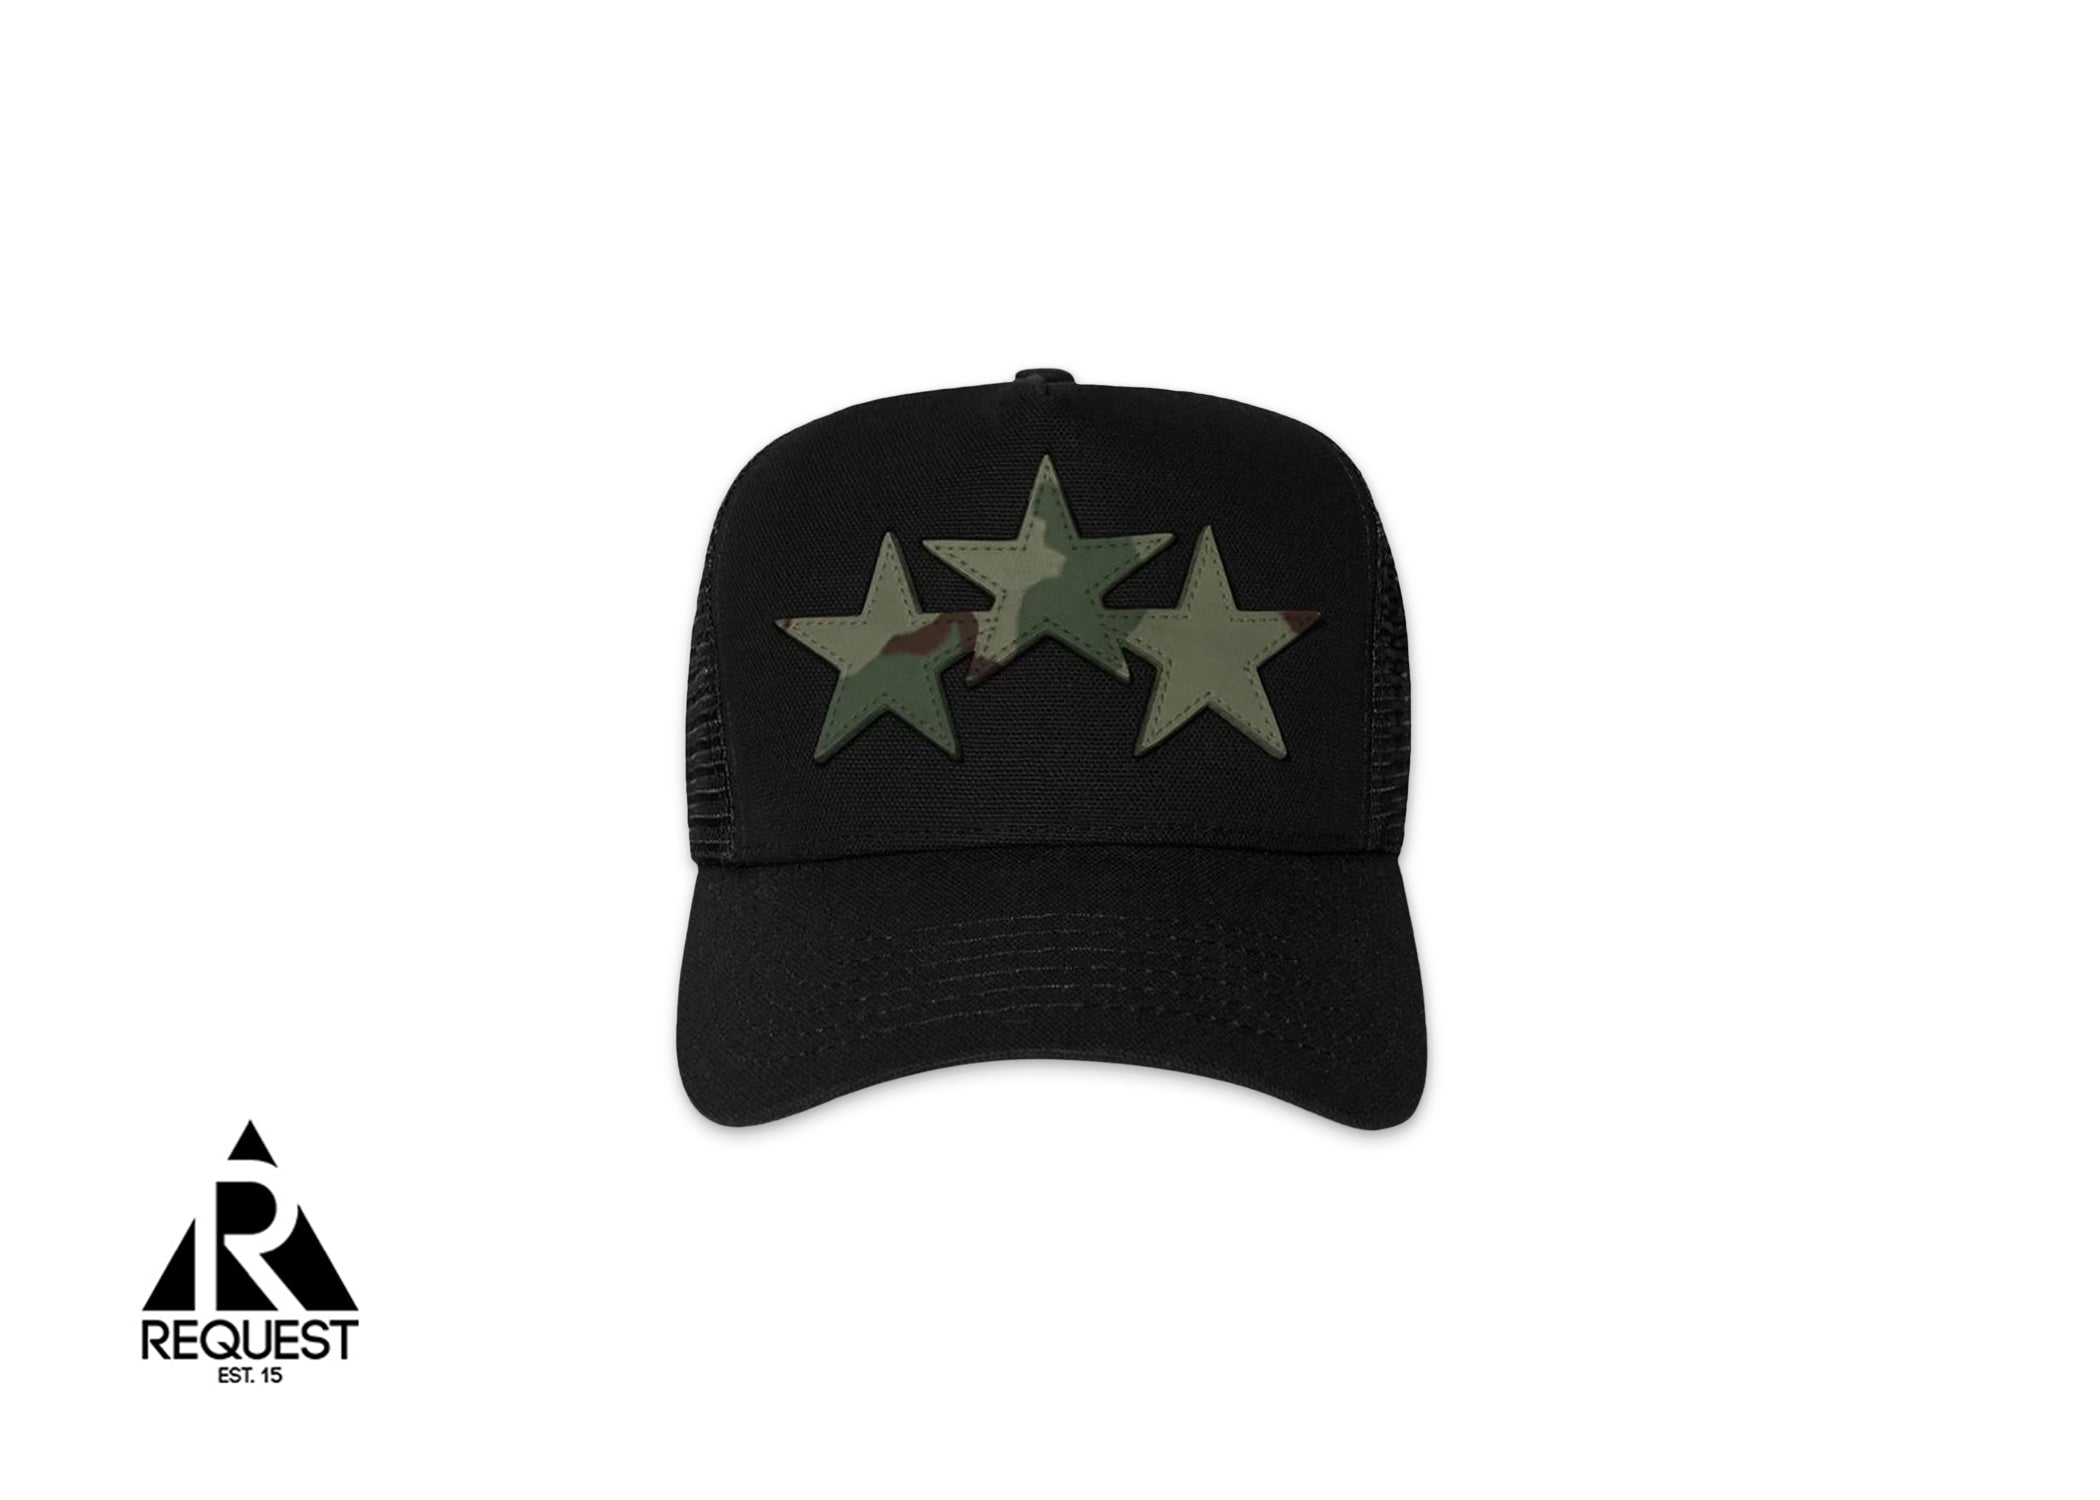 Amiri Three Star Trucker Hat "Black/Camo"